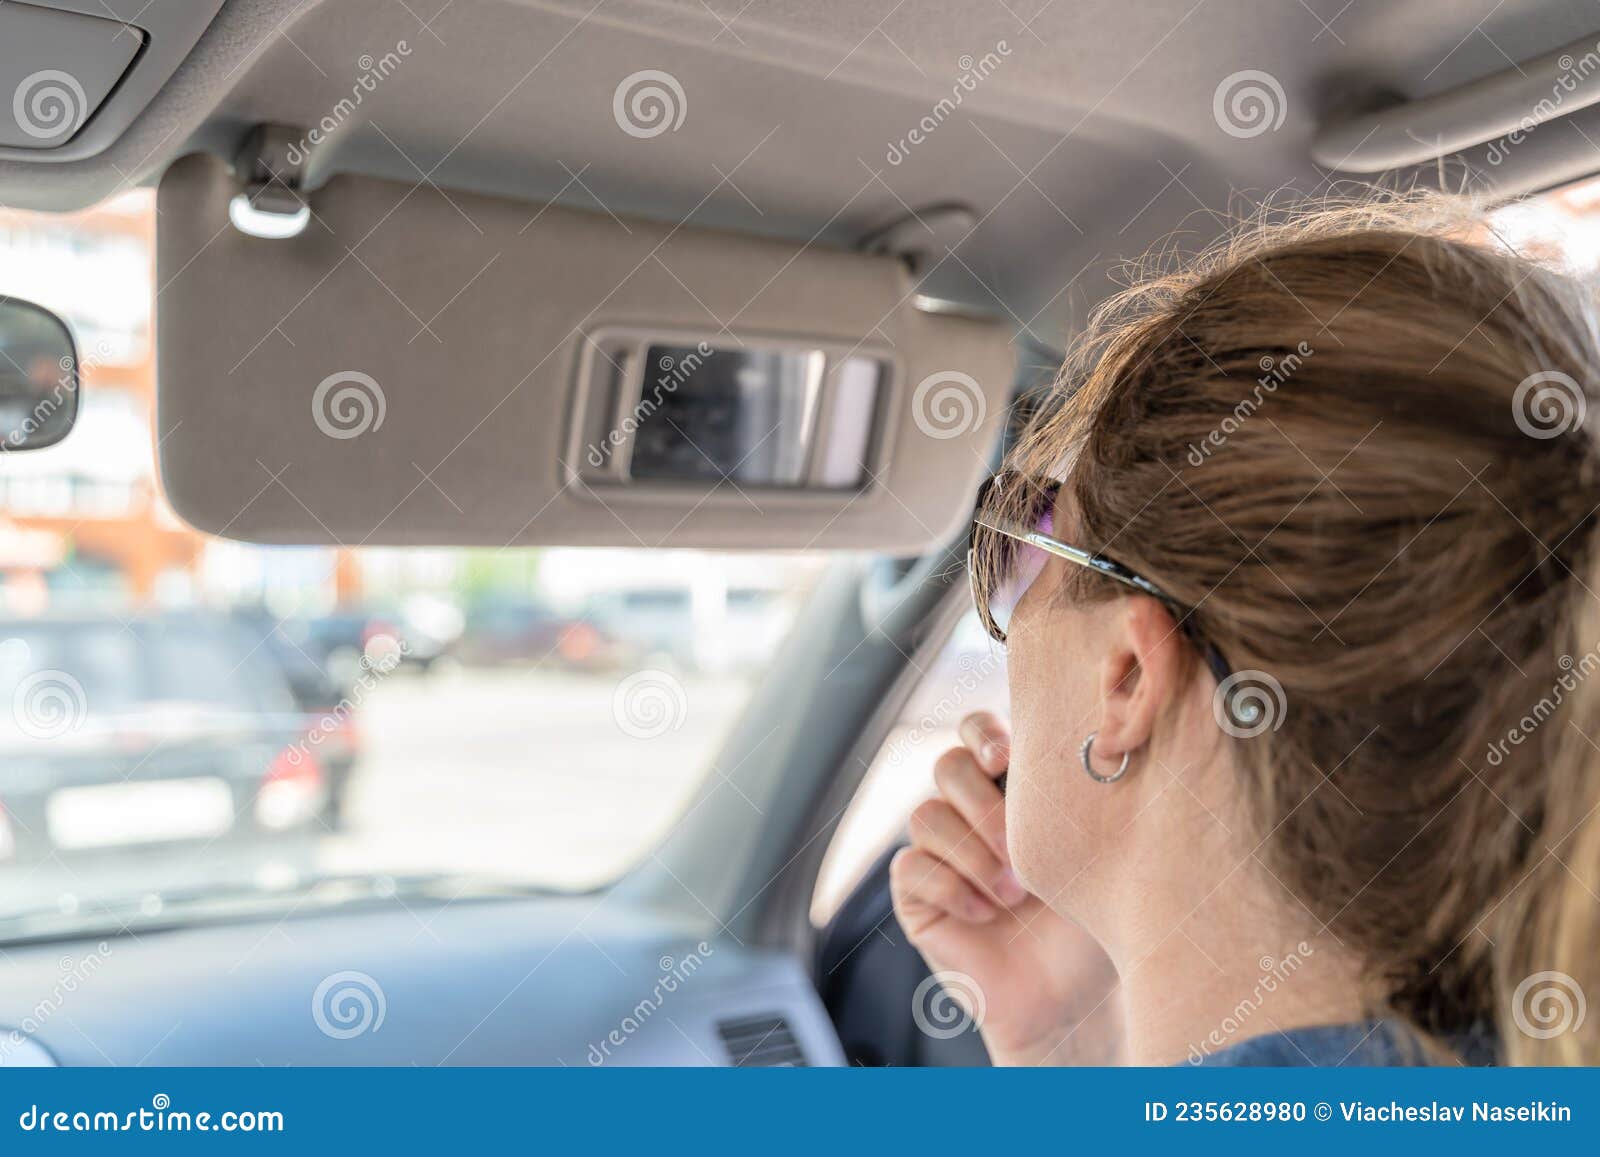 Eine Junge Mittelaltrige Frau Schminkt Sich Mit Lippenstift Im Auto,  Während Sie in Einen Kleinen Spiegel in Einem Visier Schaut Stockfoto -  Bild von lippenstift, spiegel: 235628980